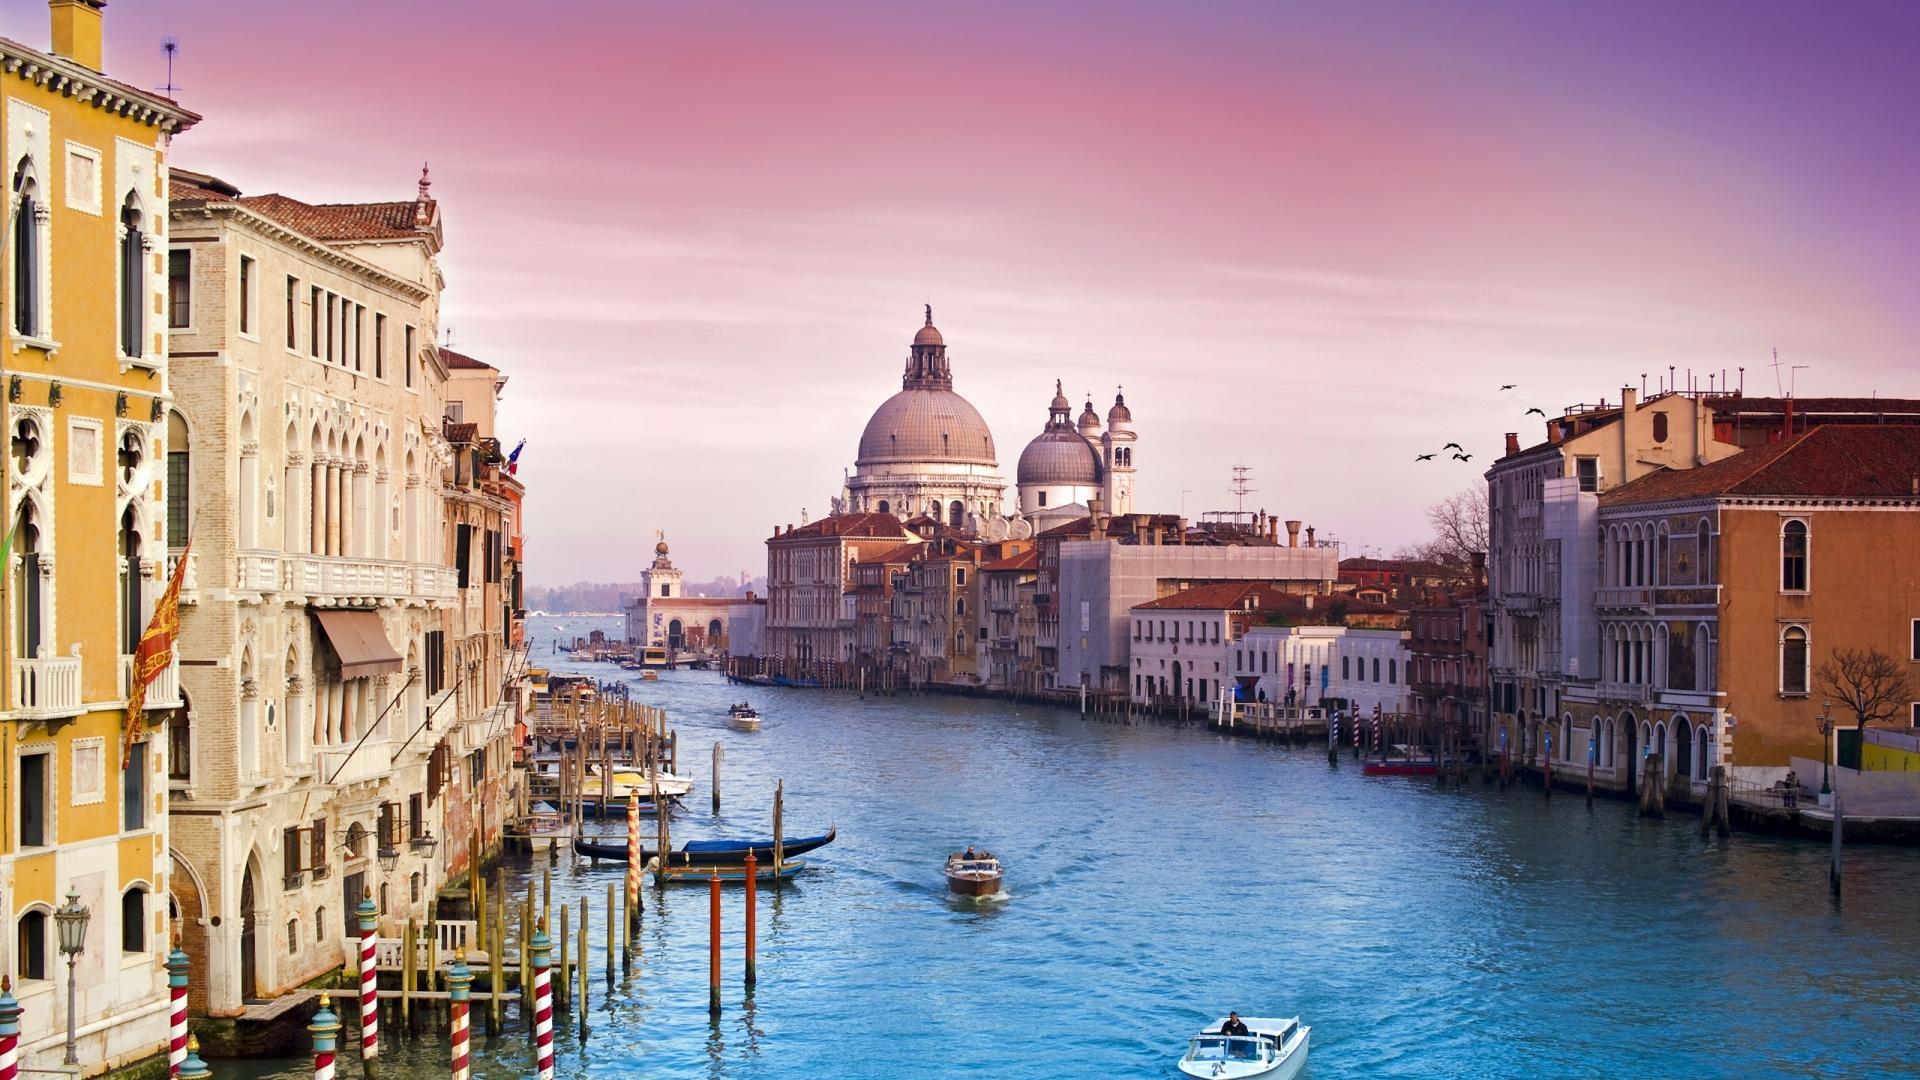 Free 1920x1080 Beautiful City Of Venice Italy Wallpaper Full HD